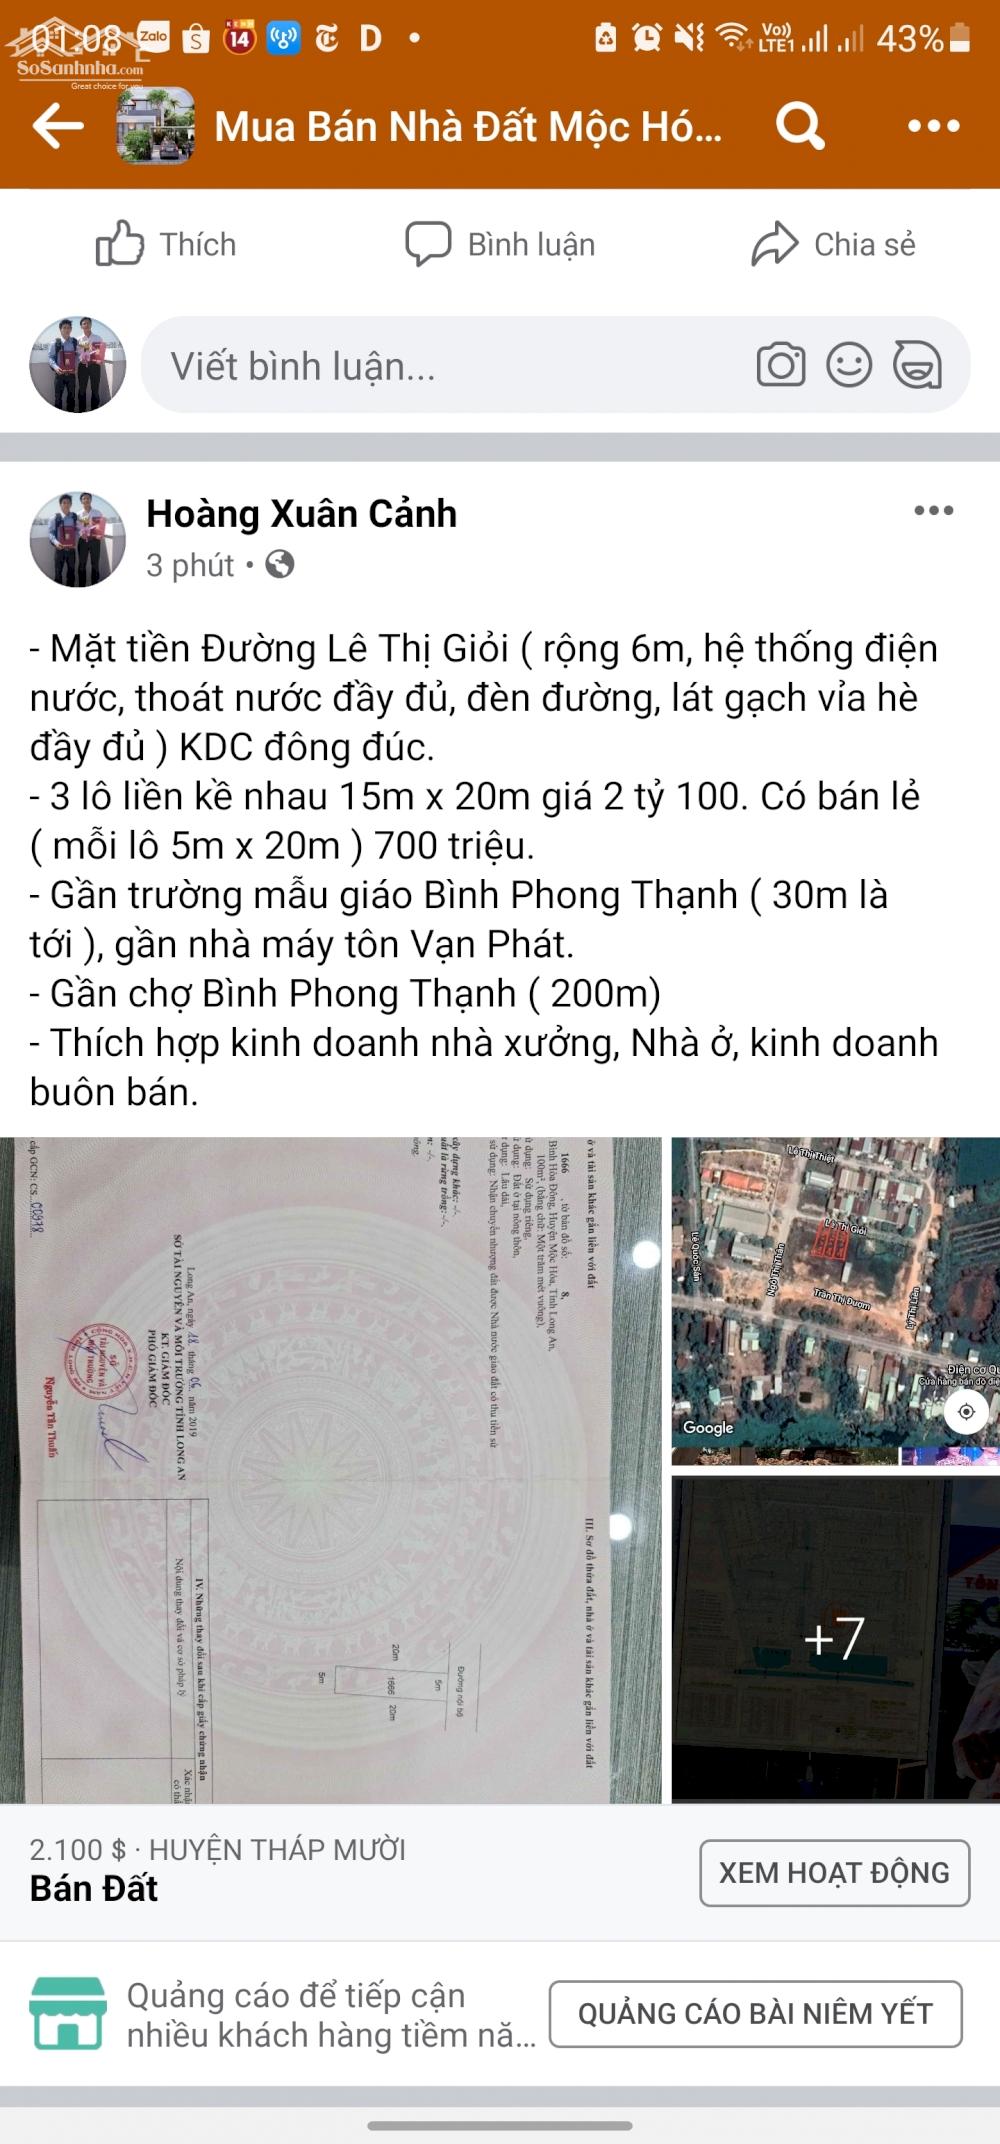  Bán đất tại Xã Bình Hòa Đông, huyện Mộc Hóa, Tỉnh Long An.

Thông tin mô tả: 11645474